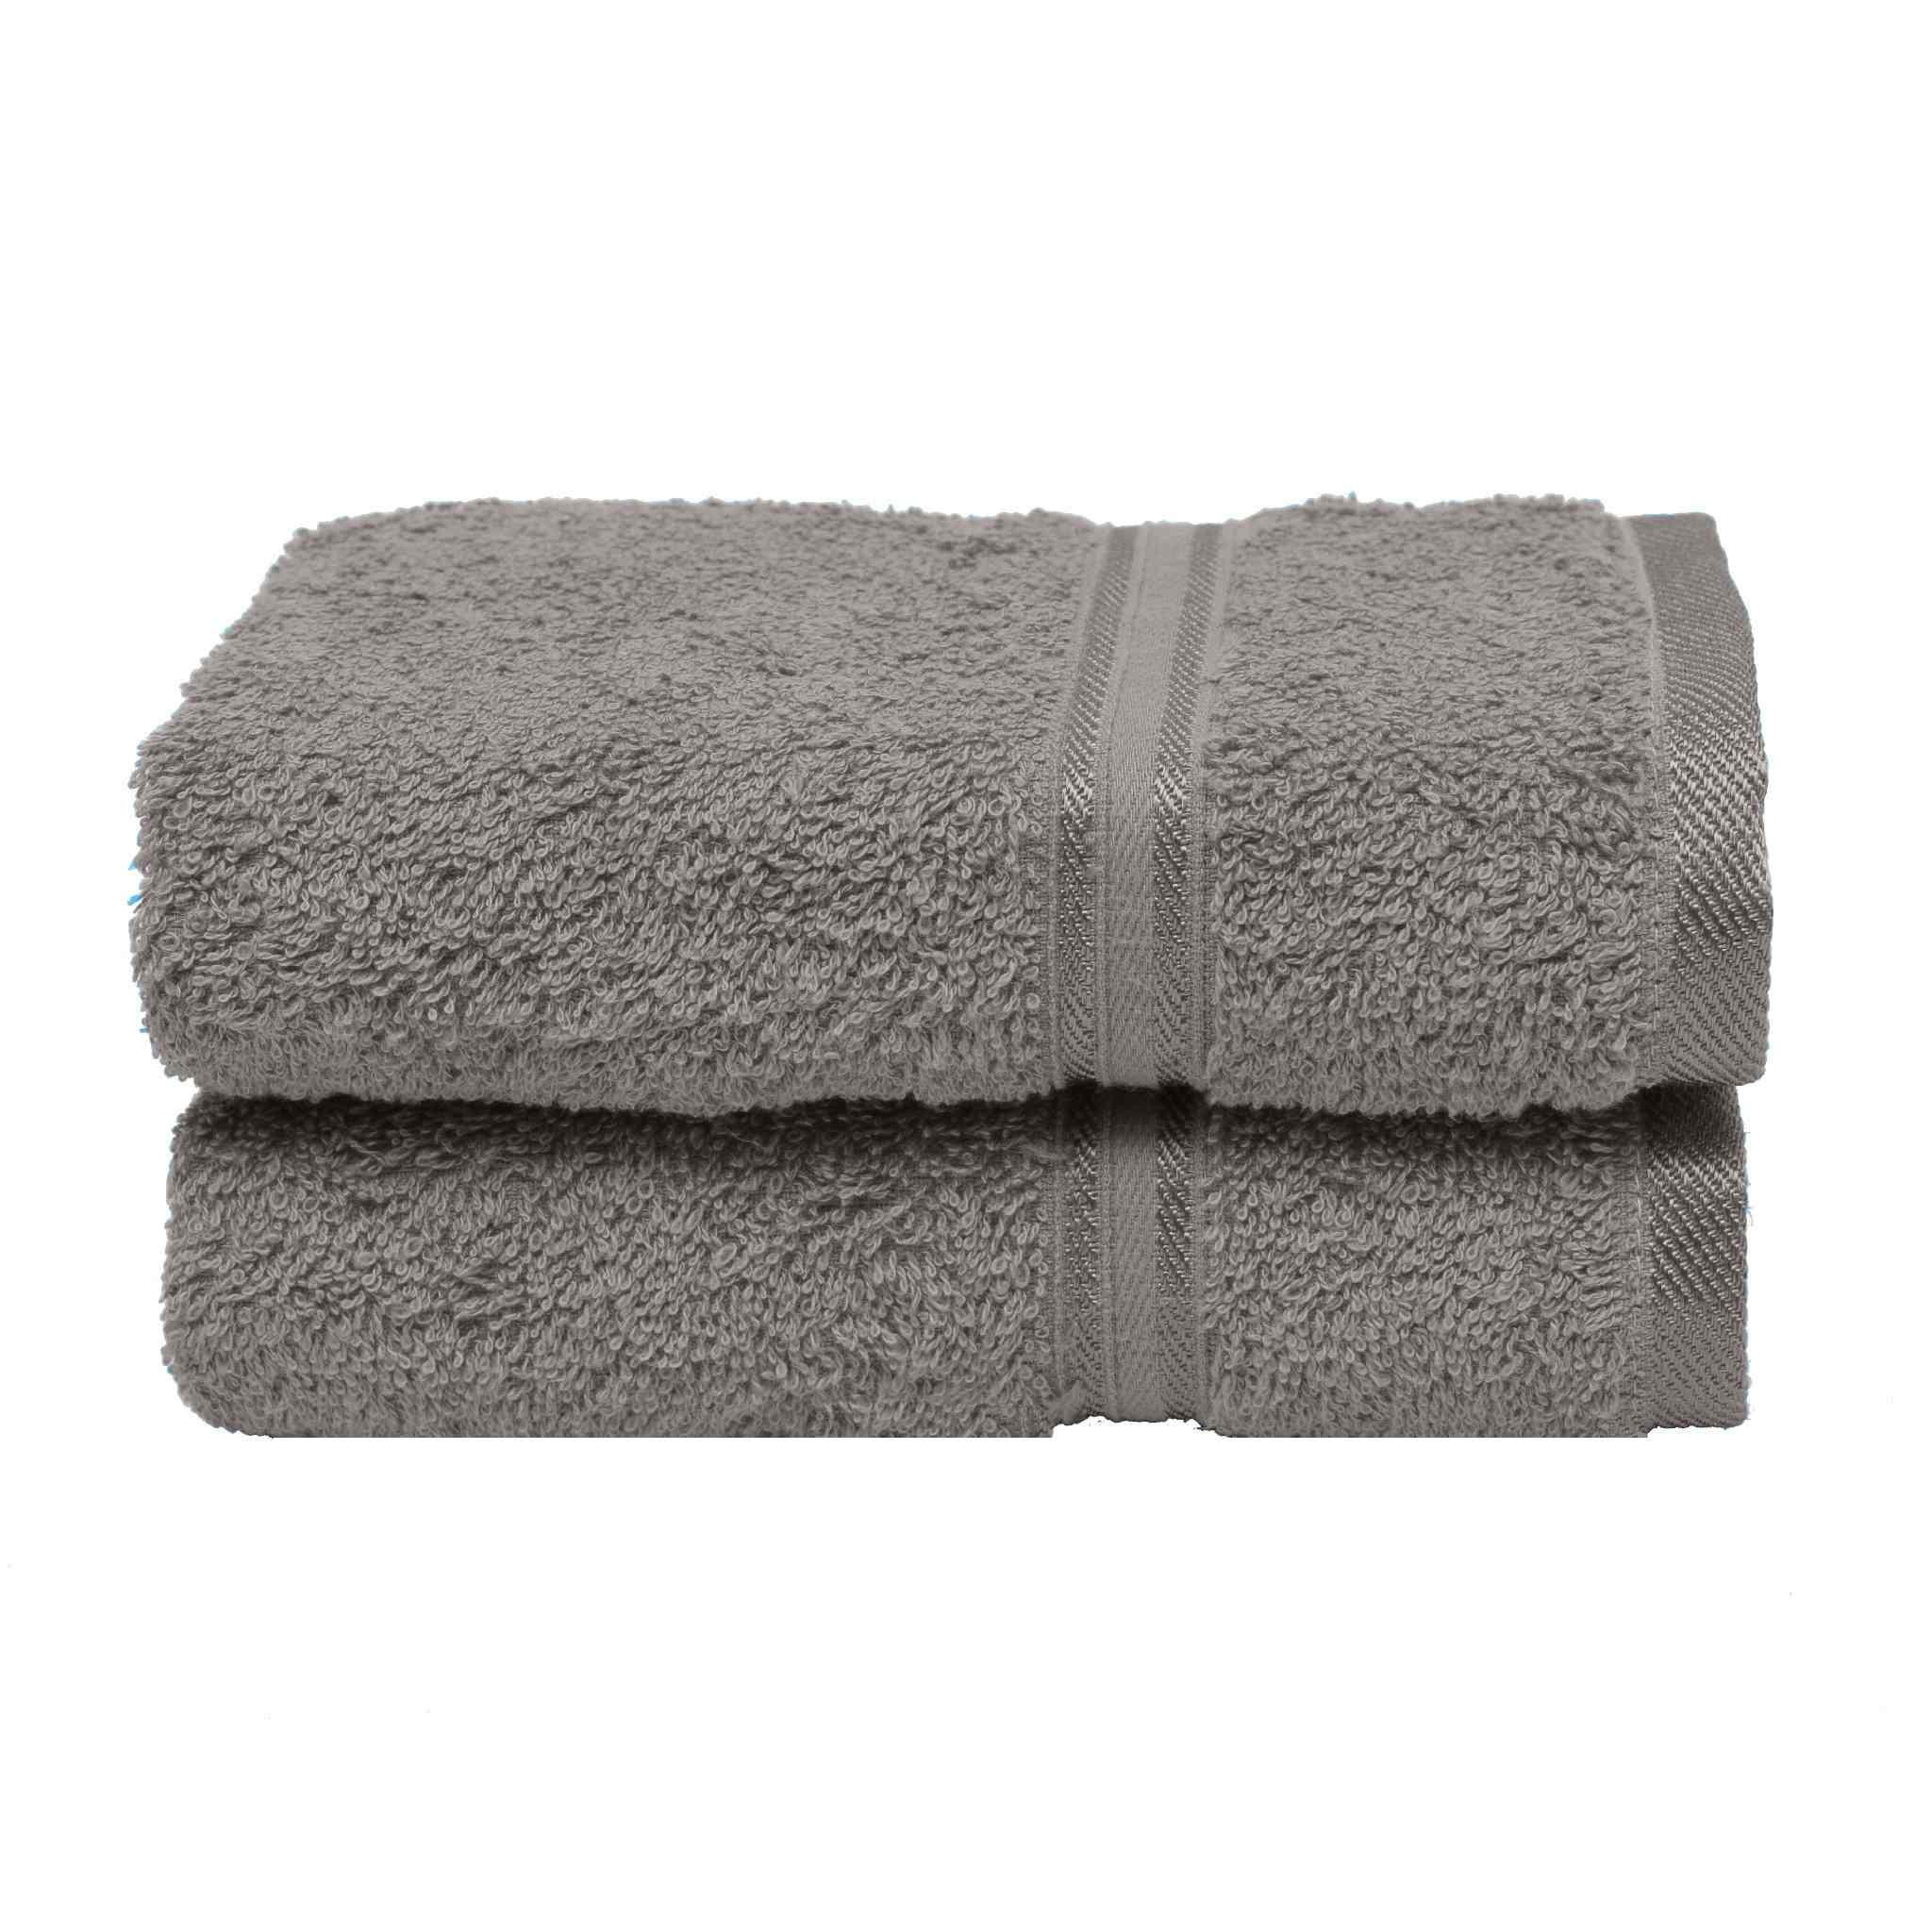 Super Comfy 100% Cotton Hand Towels, Ash